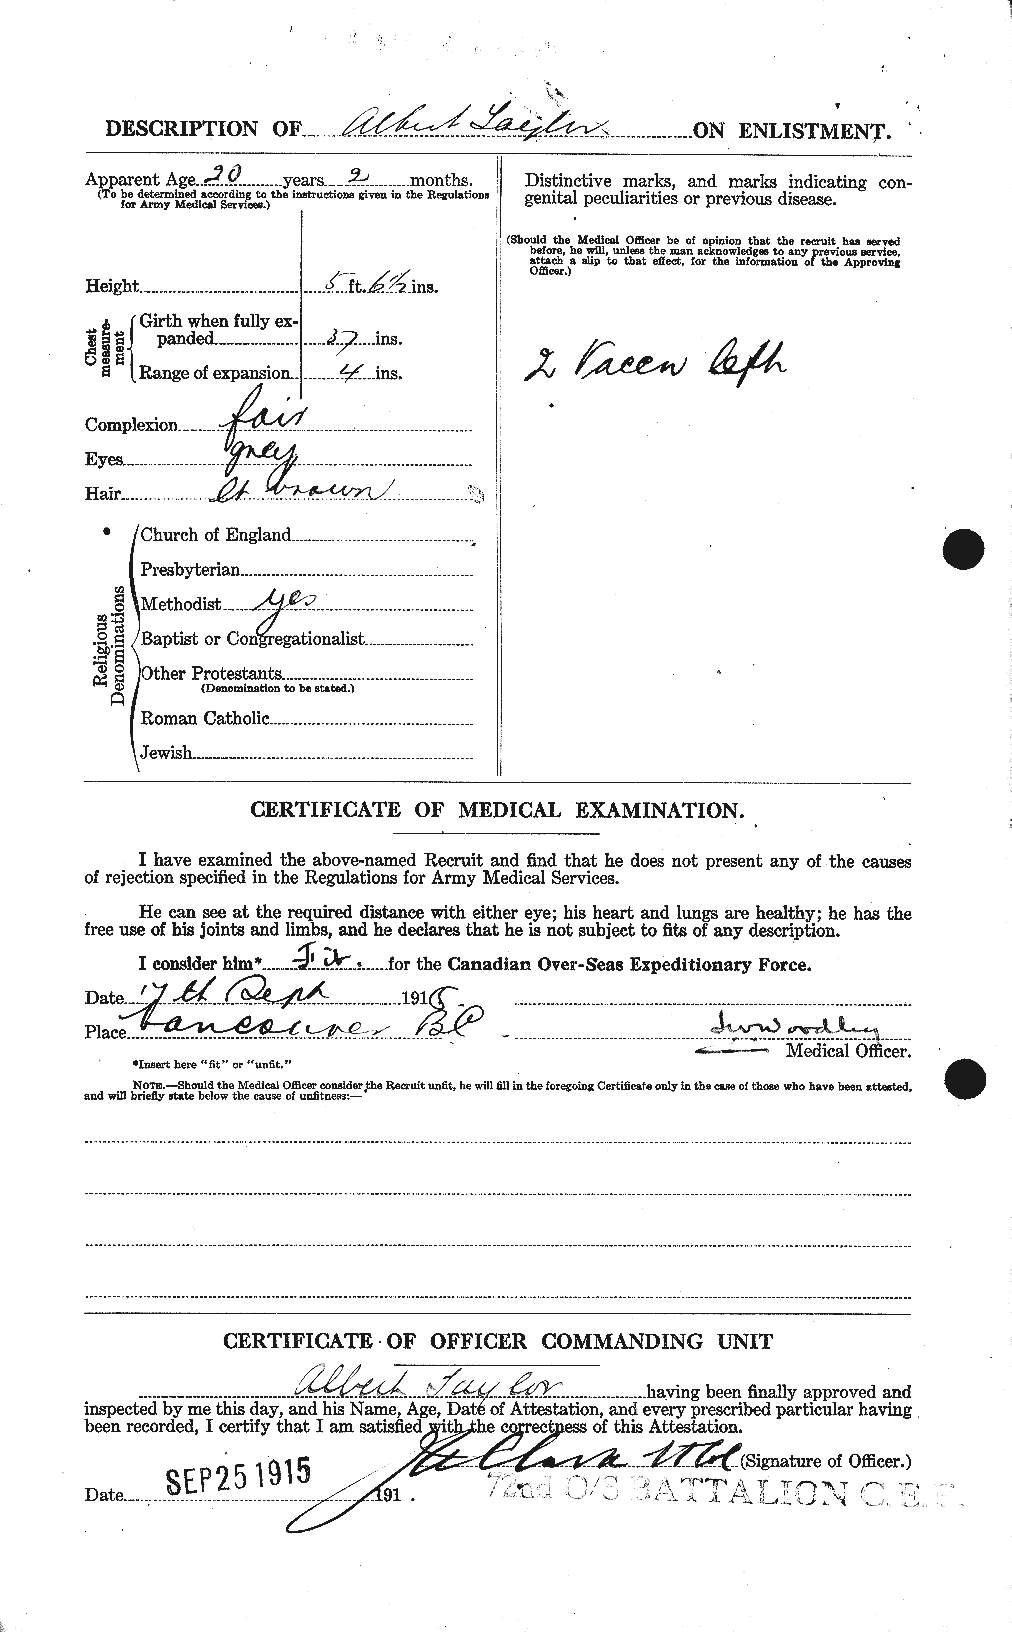 Dossiers du Personnel de la Première Guerre mondiale - CEC 626093b